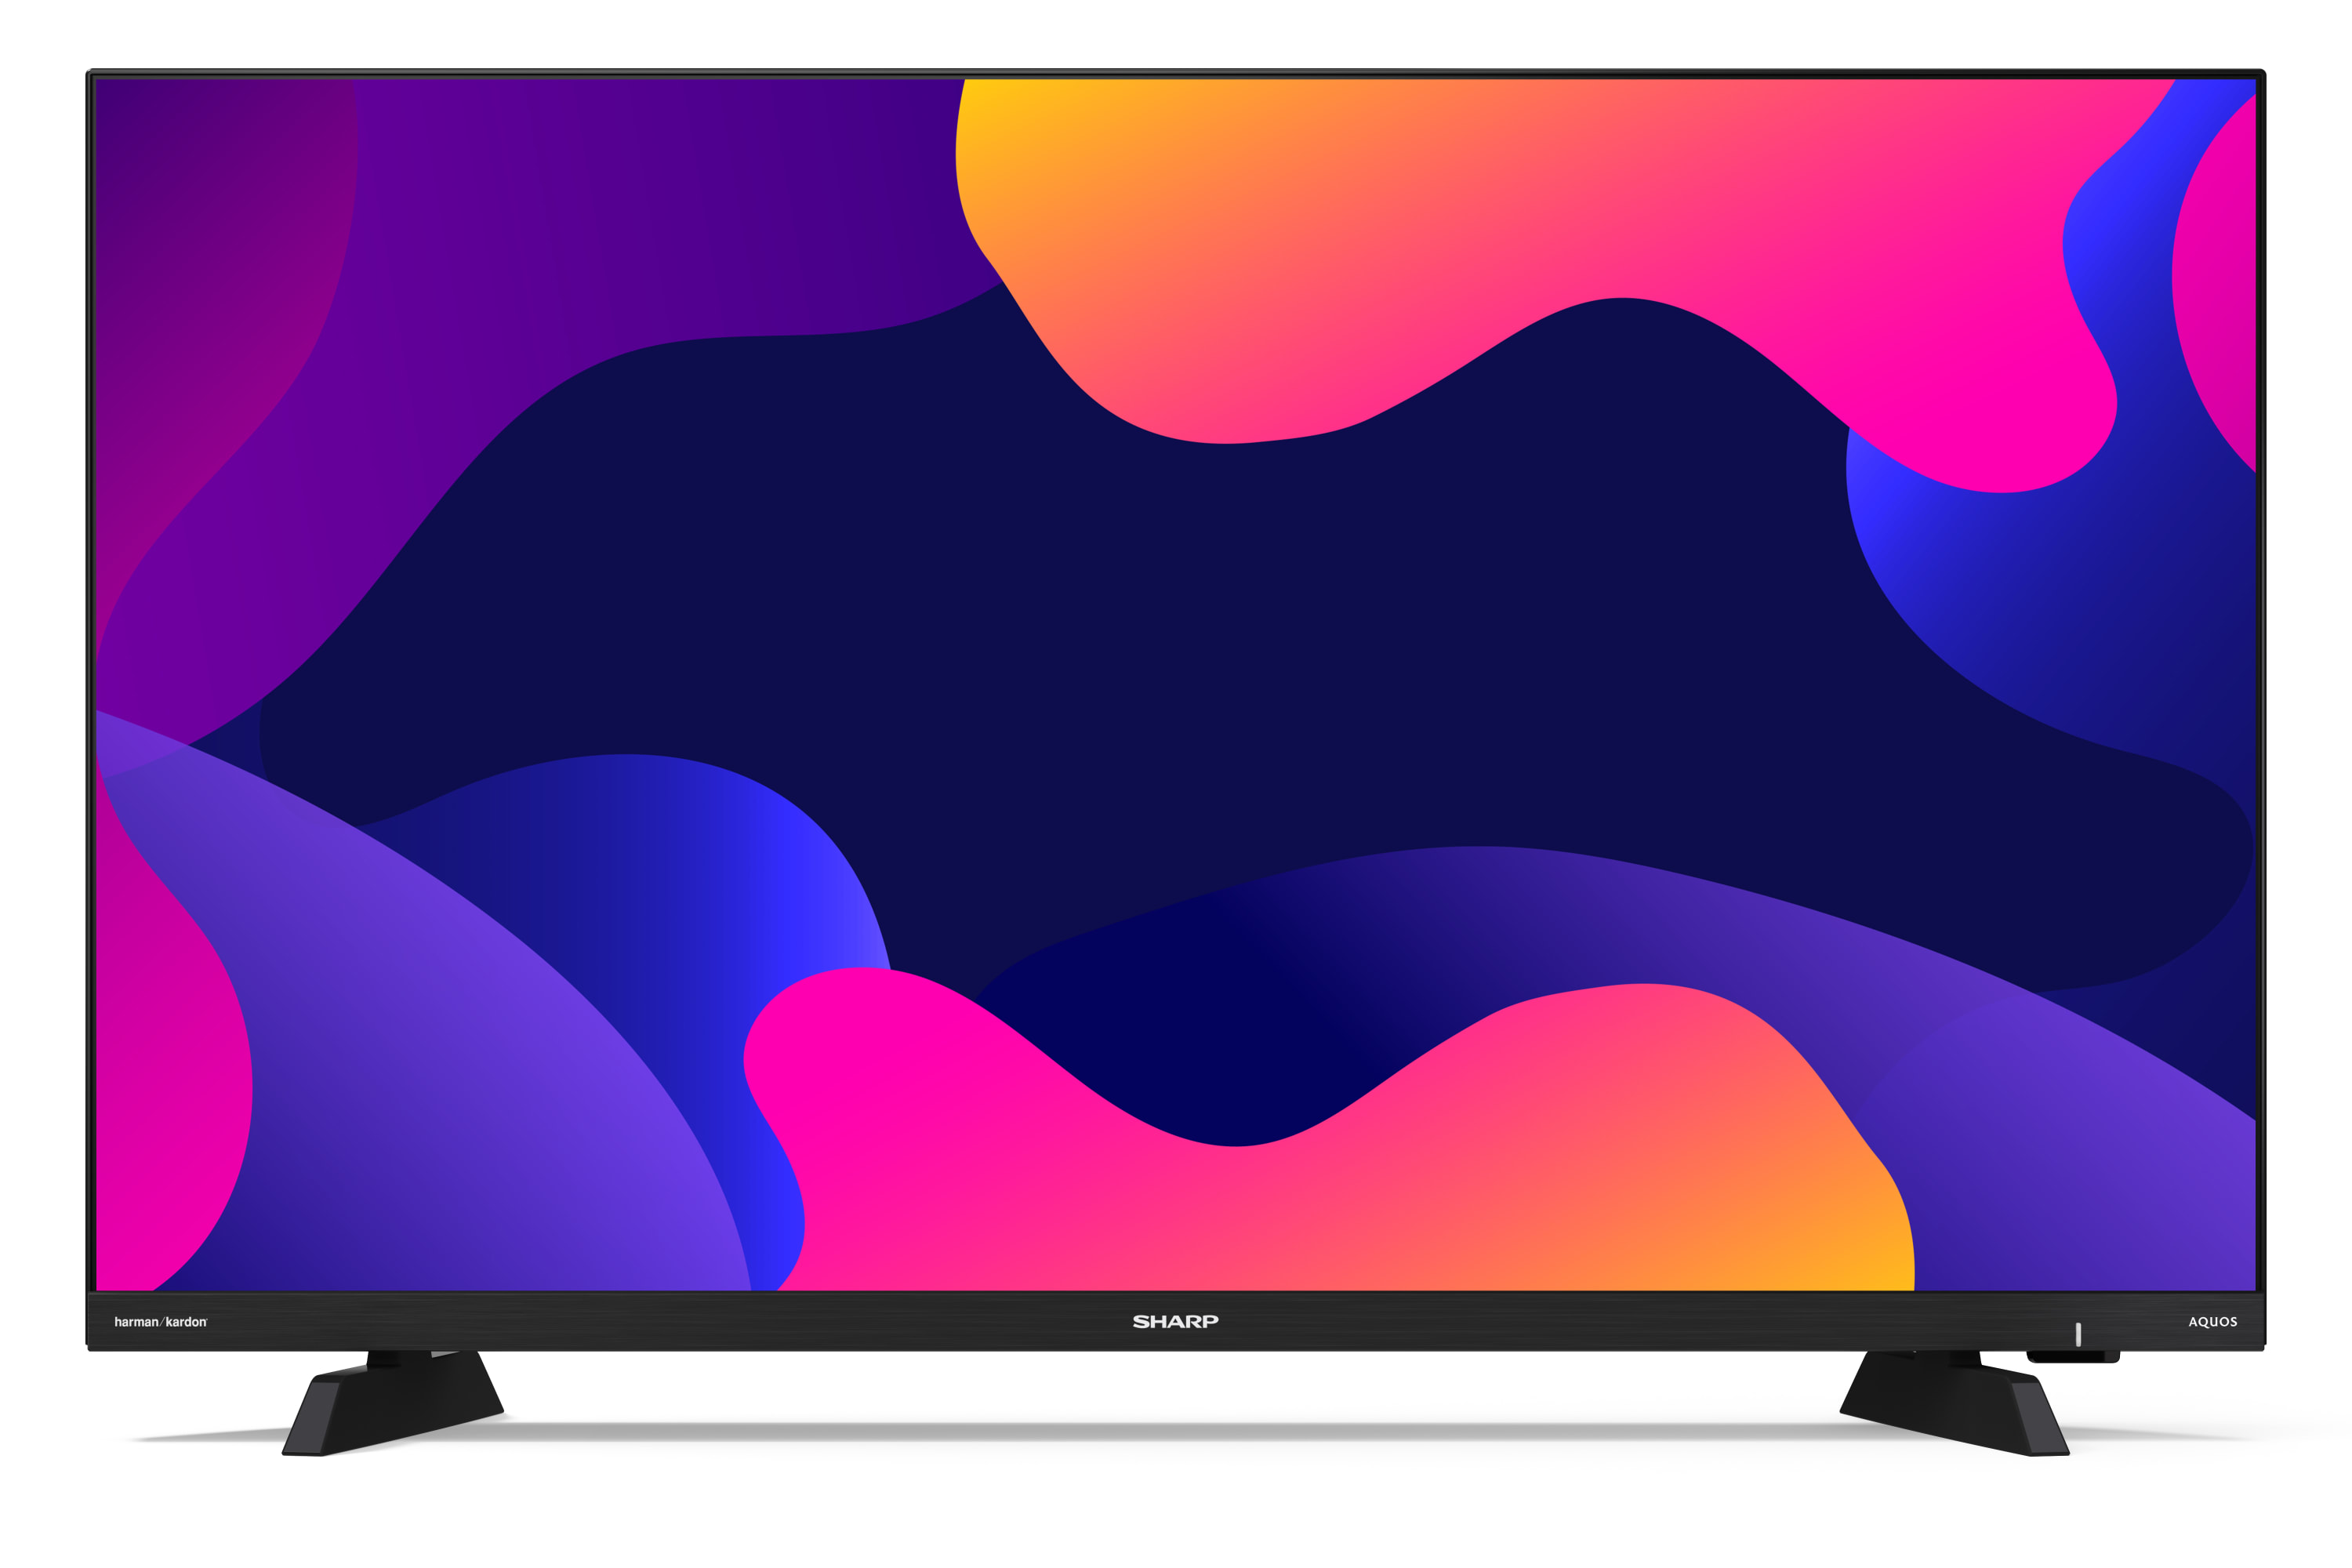 Smart TV HD/Full HD - SMART DE 32" CON CAPACIDAD HD